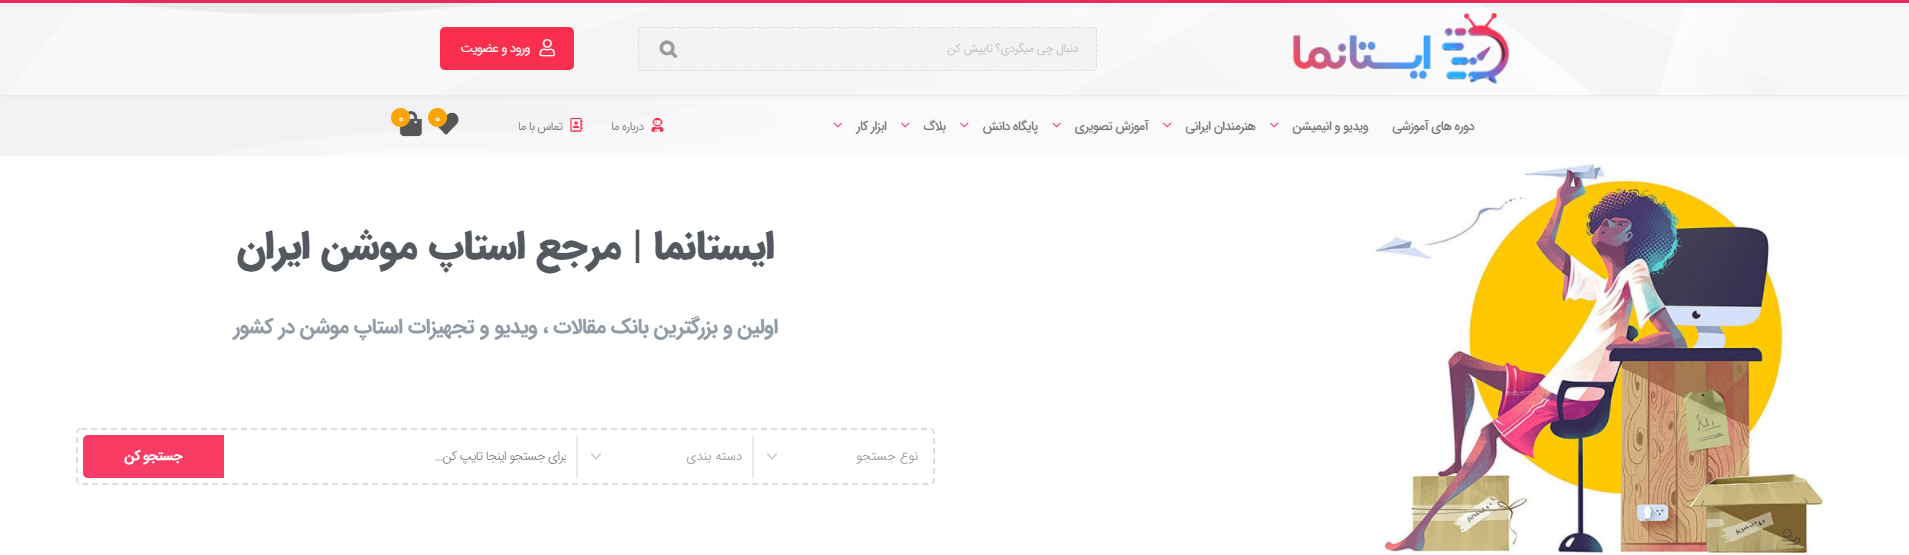 هدر وبسایت بزرگترین مرجع استاب موشن شبکه ایستانما خرداد ۱۴۰۰